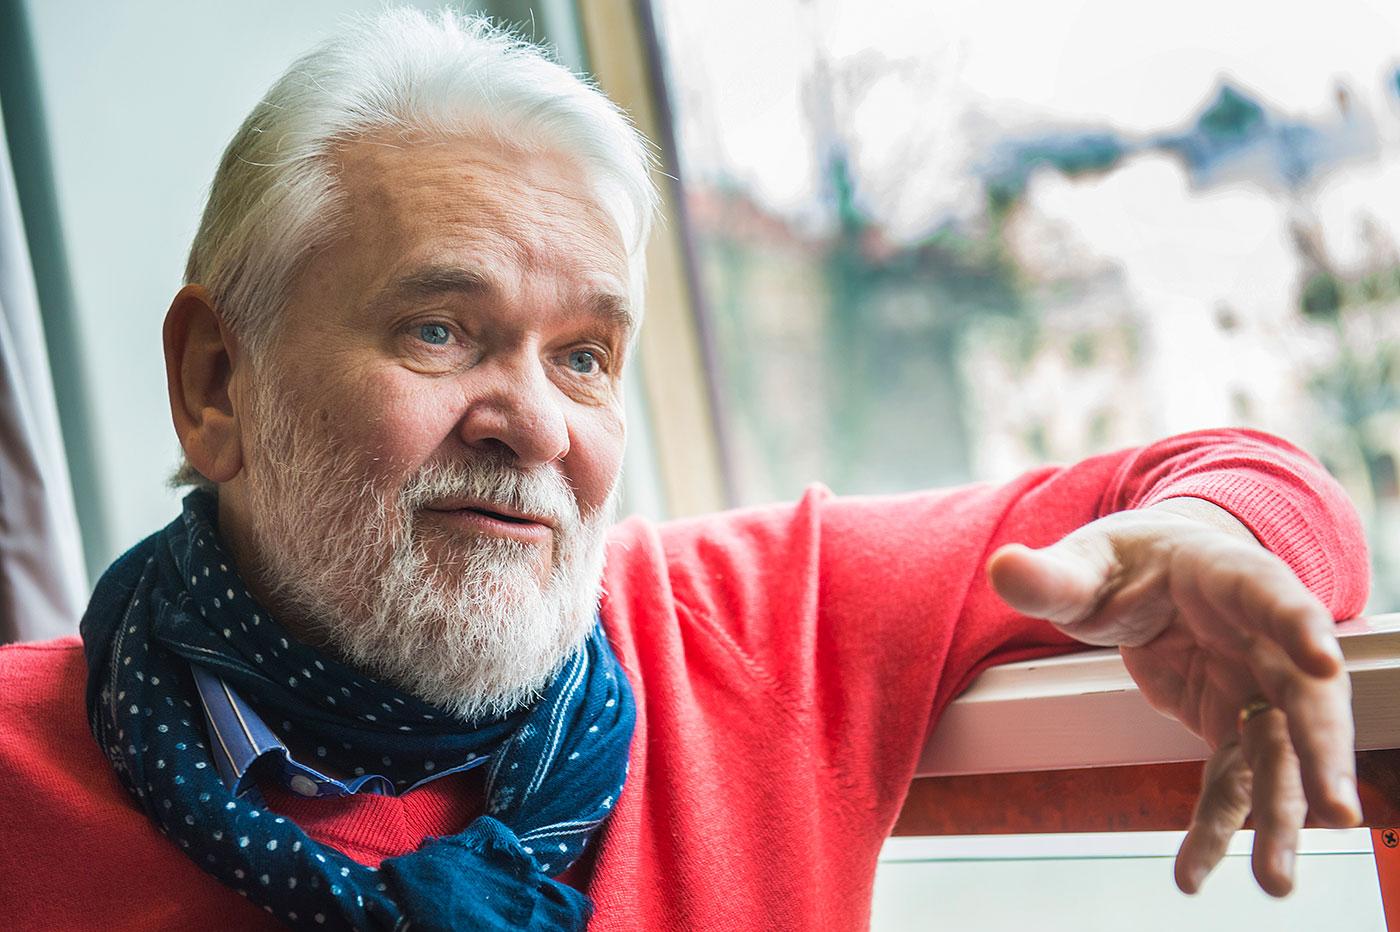 Äldst – och debutant 67-årige Hasse ”Kvinnaböske” Andersson gör debut i Melodifestivalen på lördag. Och han tror att chanserna att gå vidare är hyfsade. ”Jag tror att det är mysigt med någonting som sticker ut”, säger han.